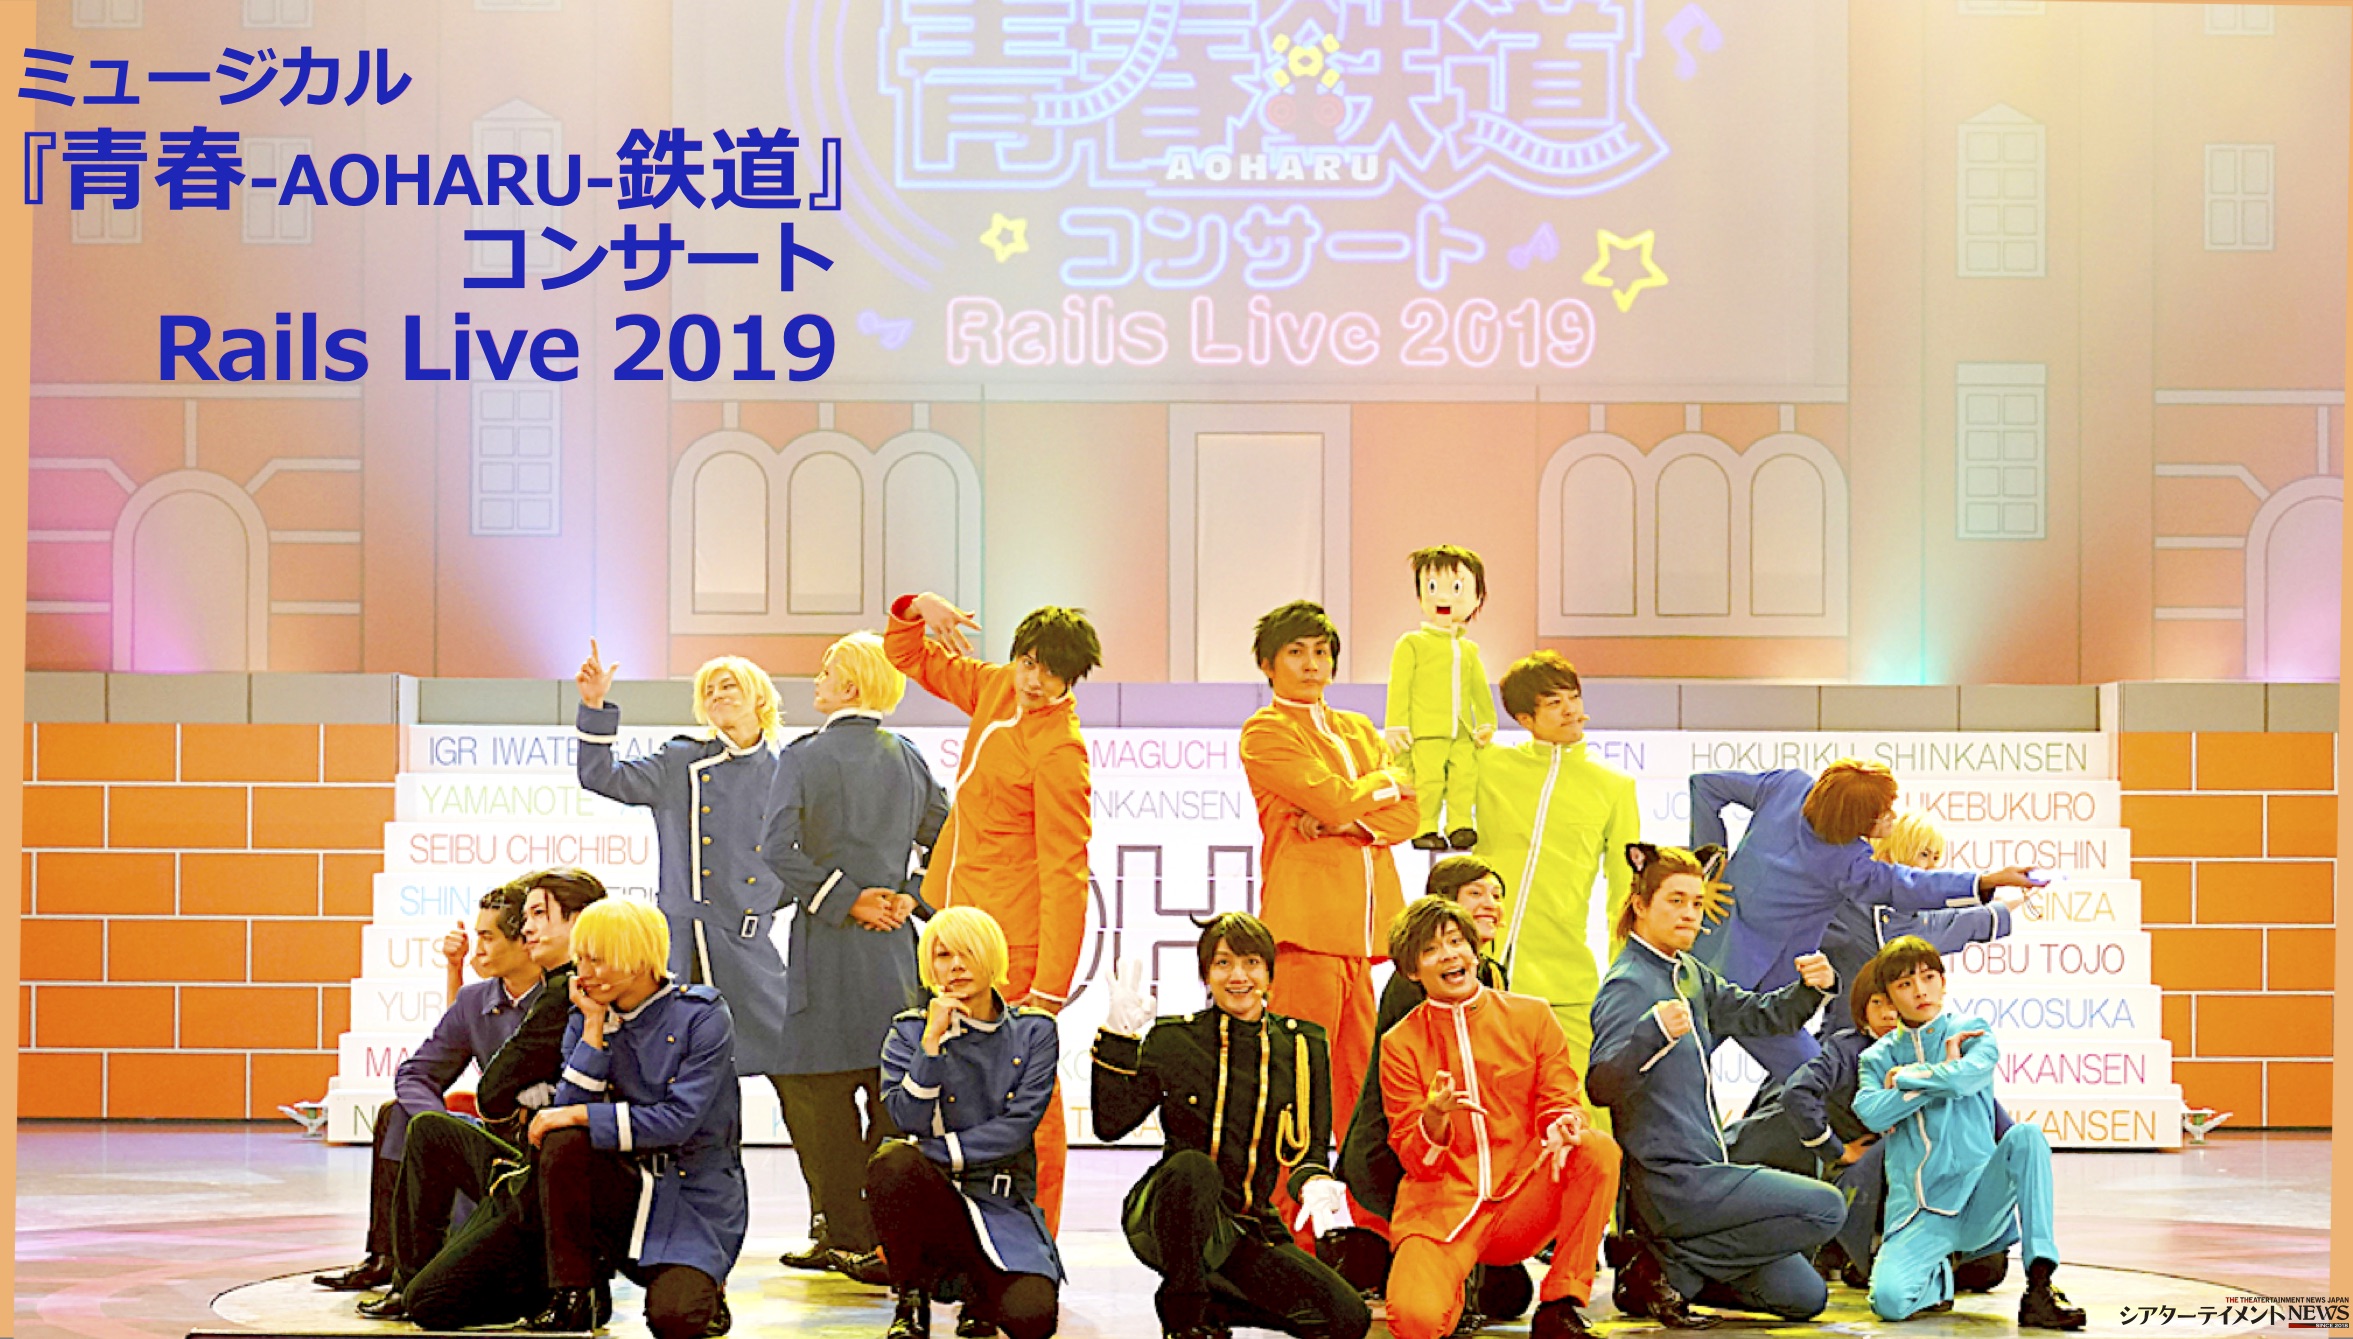 ミュージカル『青春-AOHARU-鉄道』コンサート Rails Live 2019 開幕 